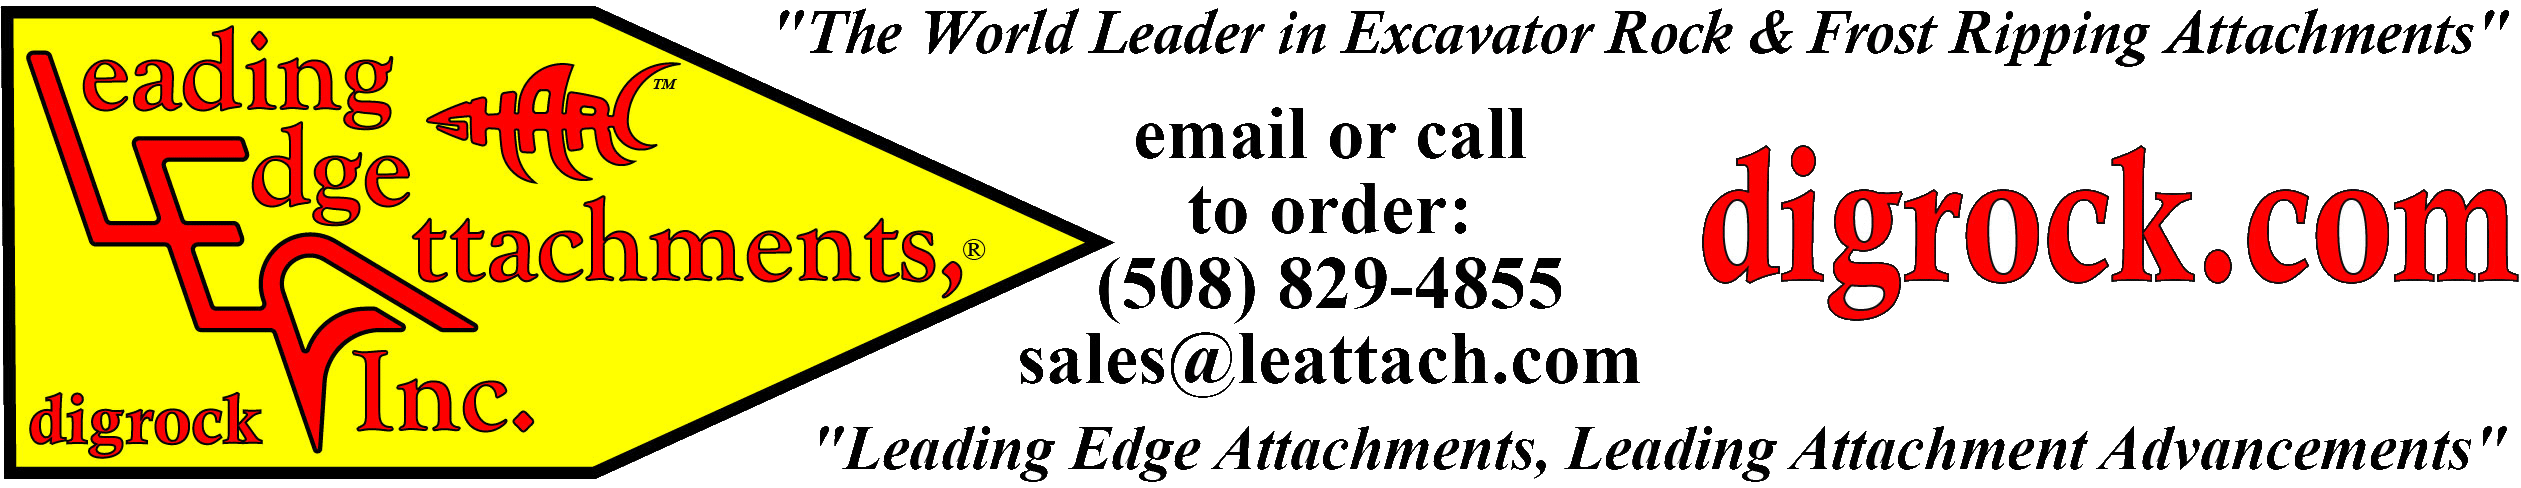 Leading Edge Attachments, Inc.